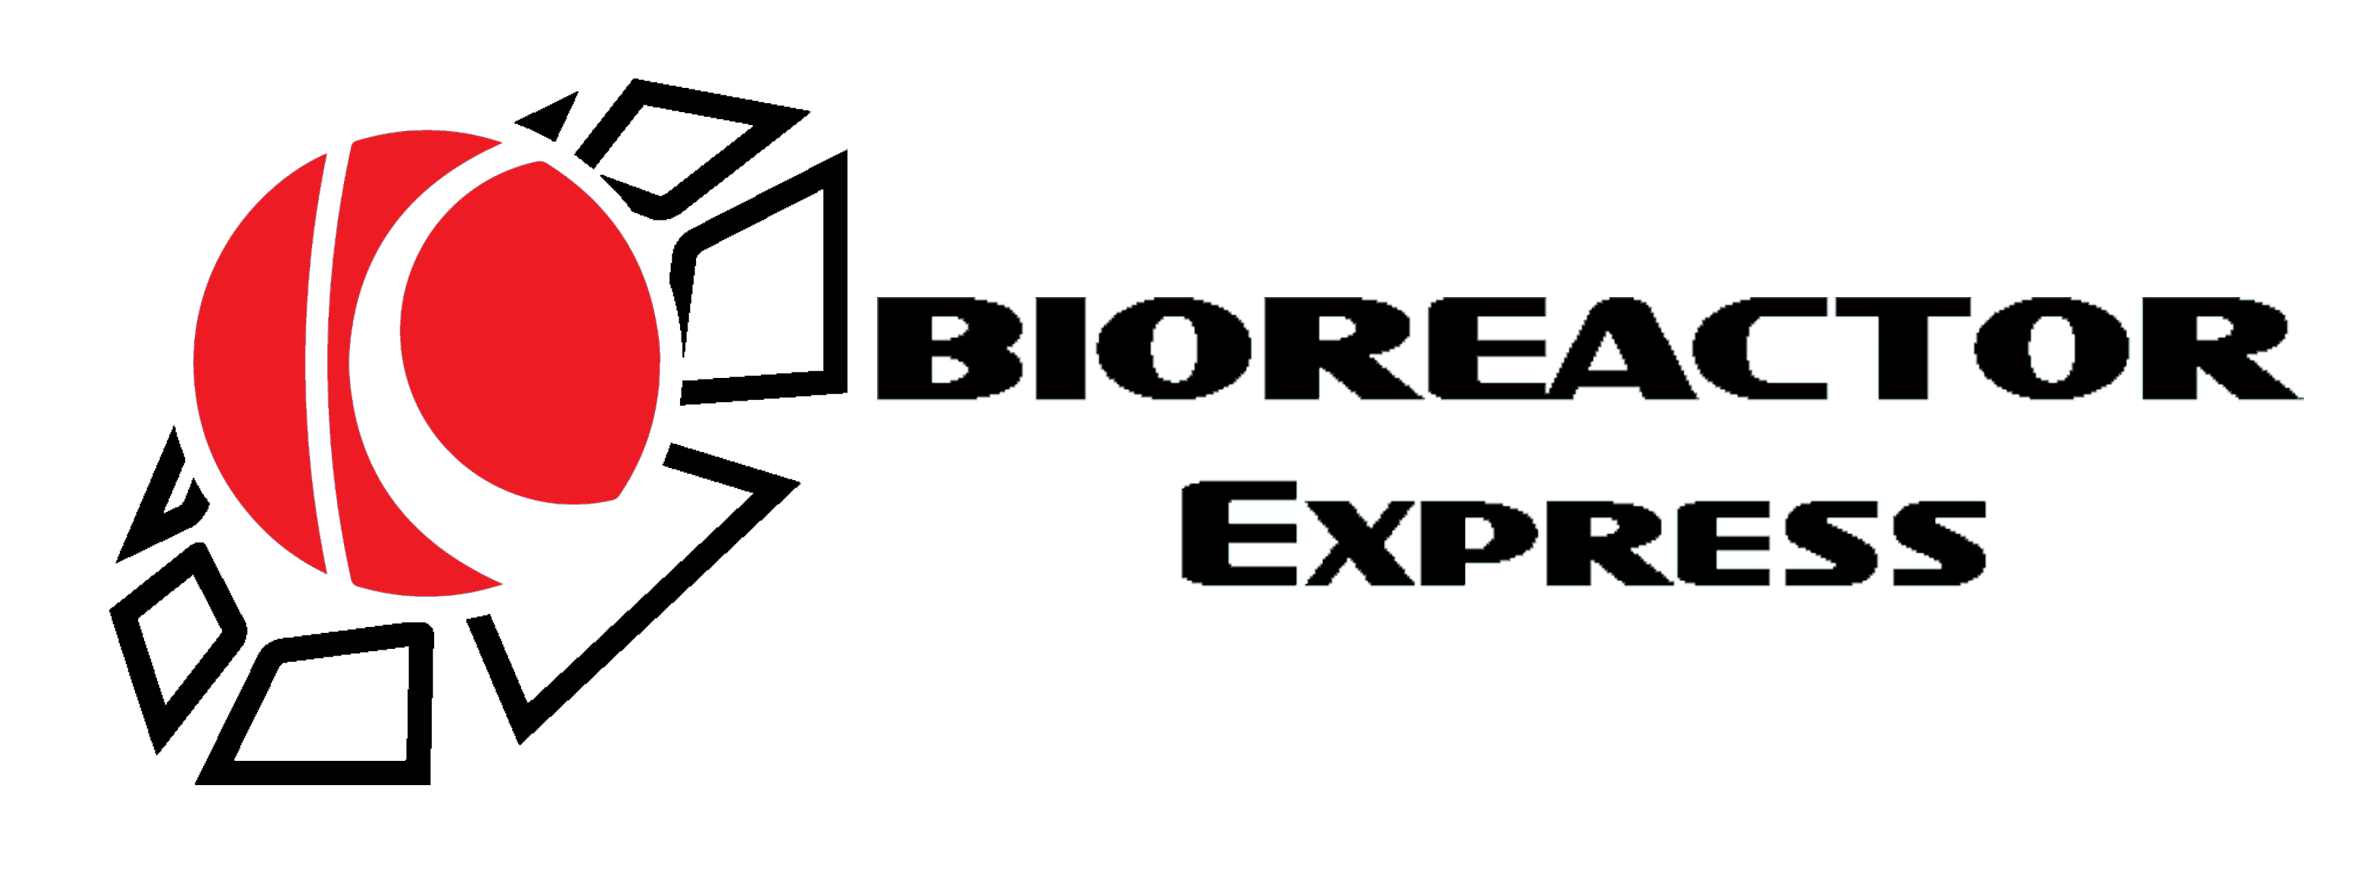 Bioreactor Express